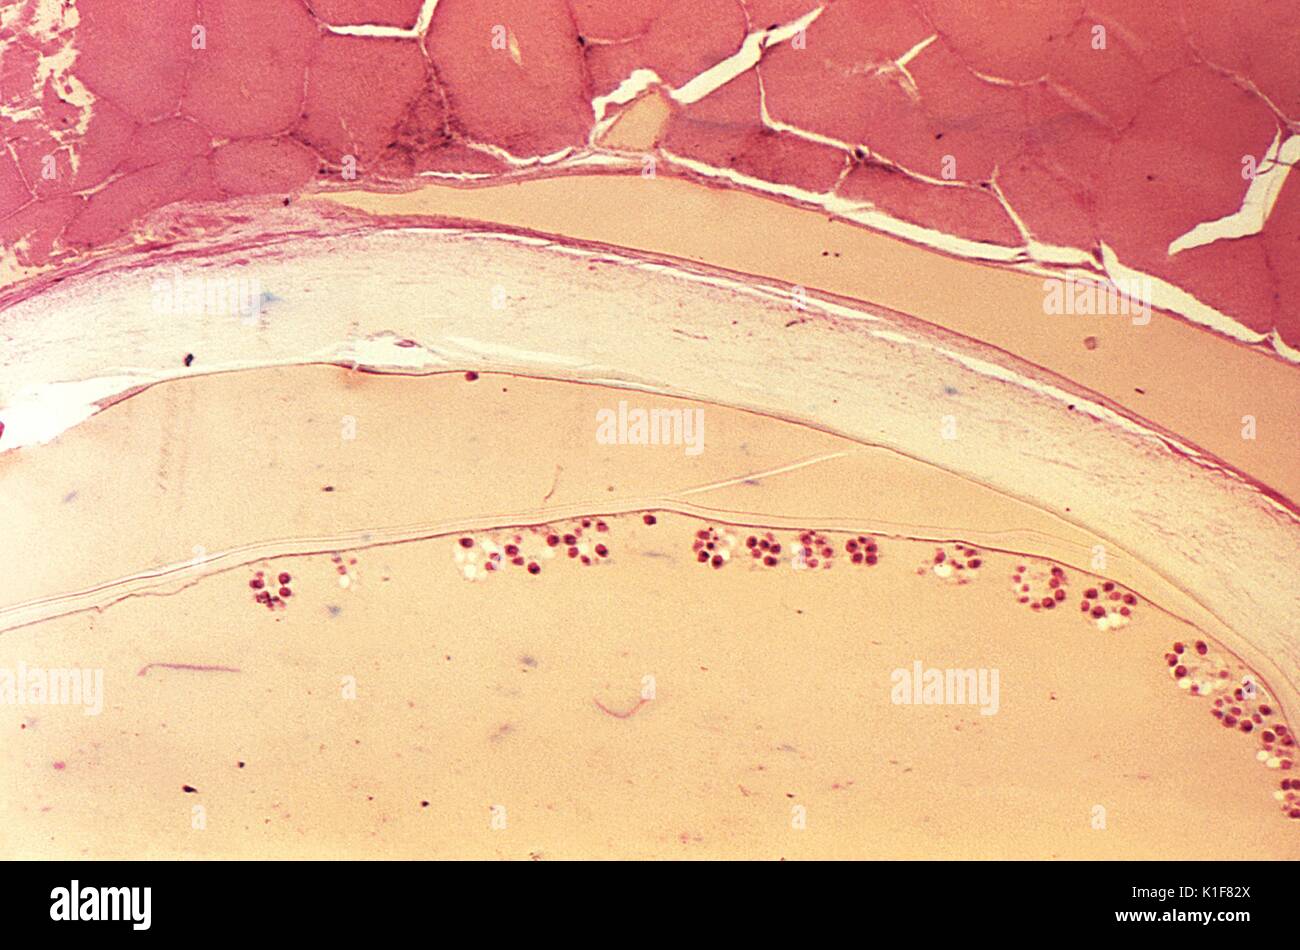 Unter einer niedrigen Vergrößerung von nur 10X, diese photomicrograph enthüllte der Ultrastrukturforschung Morphologie in einem abgetrennten Abschnitt einer Echinococcus sp gesehen. hydatid Zyste. Während ihres gesamten Lebenszyklus im Wirt, diese bandwürmer durch ein Ei, Bühne, gefolgt von einem oncosphere-Phase, die durch die Bildung einer zystischen Stadium gefolgt ist, in Dieser hydatid Zyste führt. Bruch der diese Zysten löst die Larven protoscolices und eine Bedingung, die als? hydatid Sand bekannt?. Hunde und andere caniden sind die endgültigen Wirte für Echinococcus spp. Menschen sind, werden nur von den Larven befallen nach Einnahme von Stockfoto